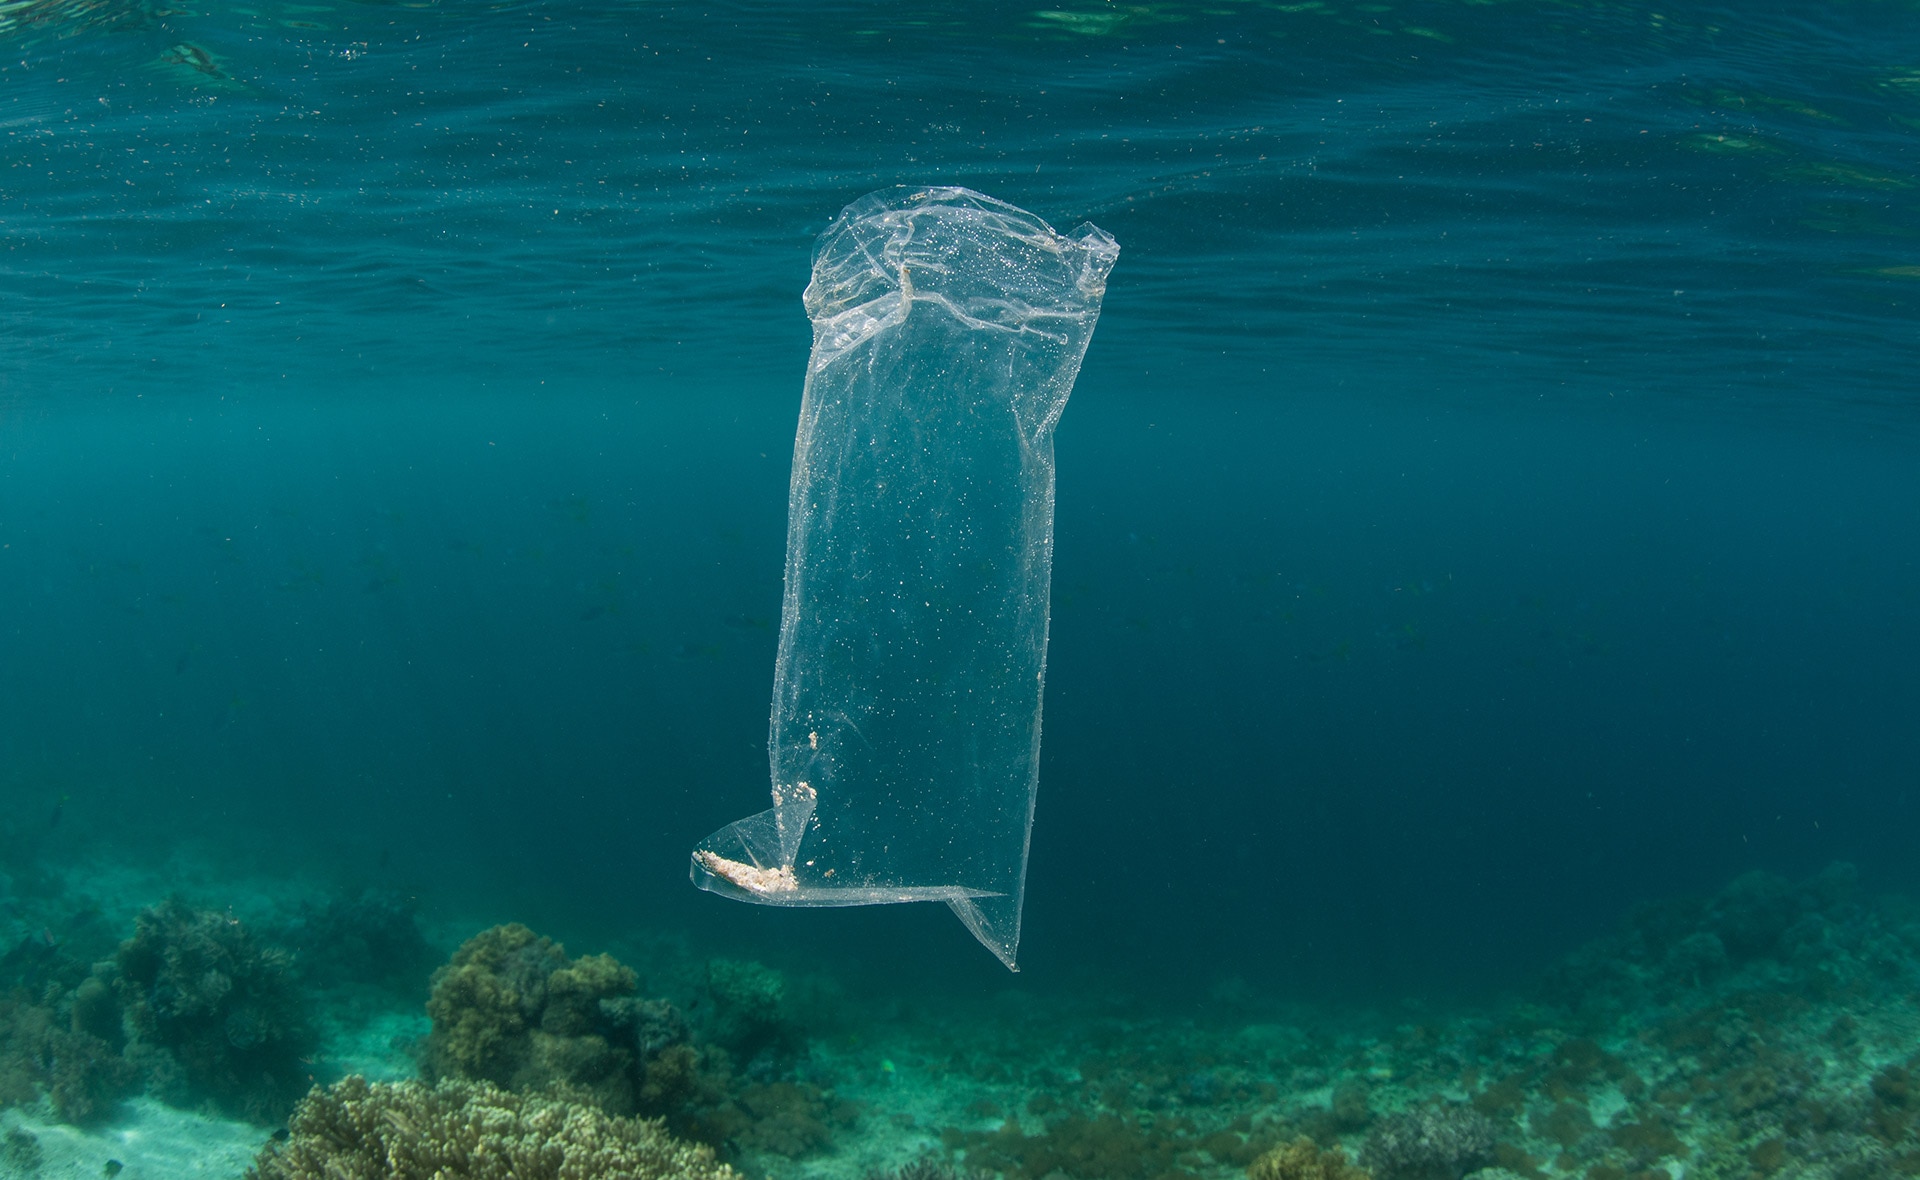 Bolsas biodegradables: el futuro de las bolsas plásticas en Europa